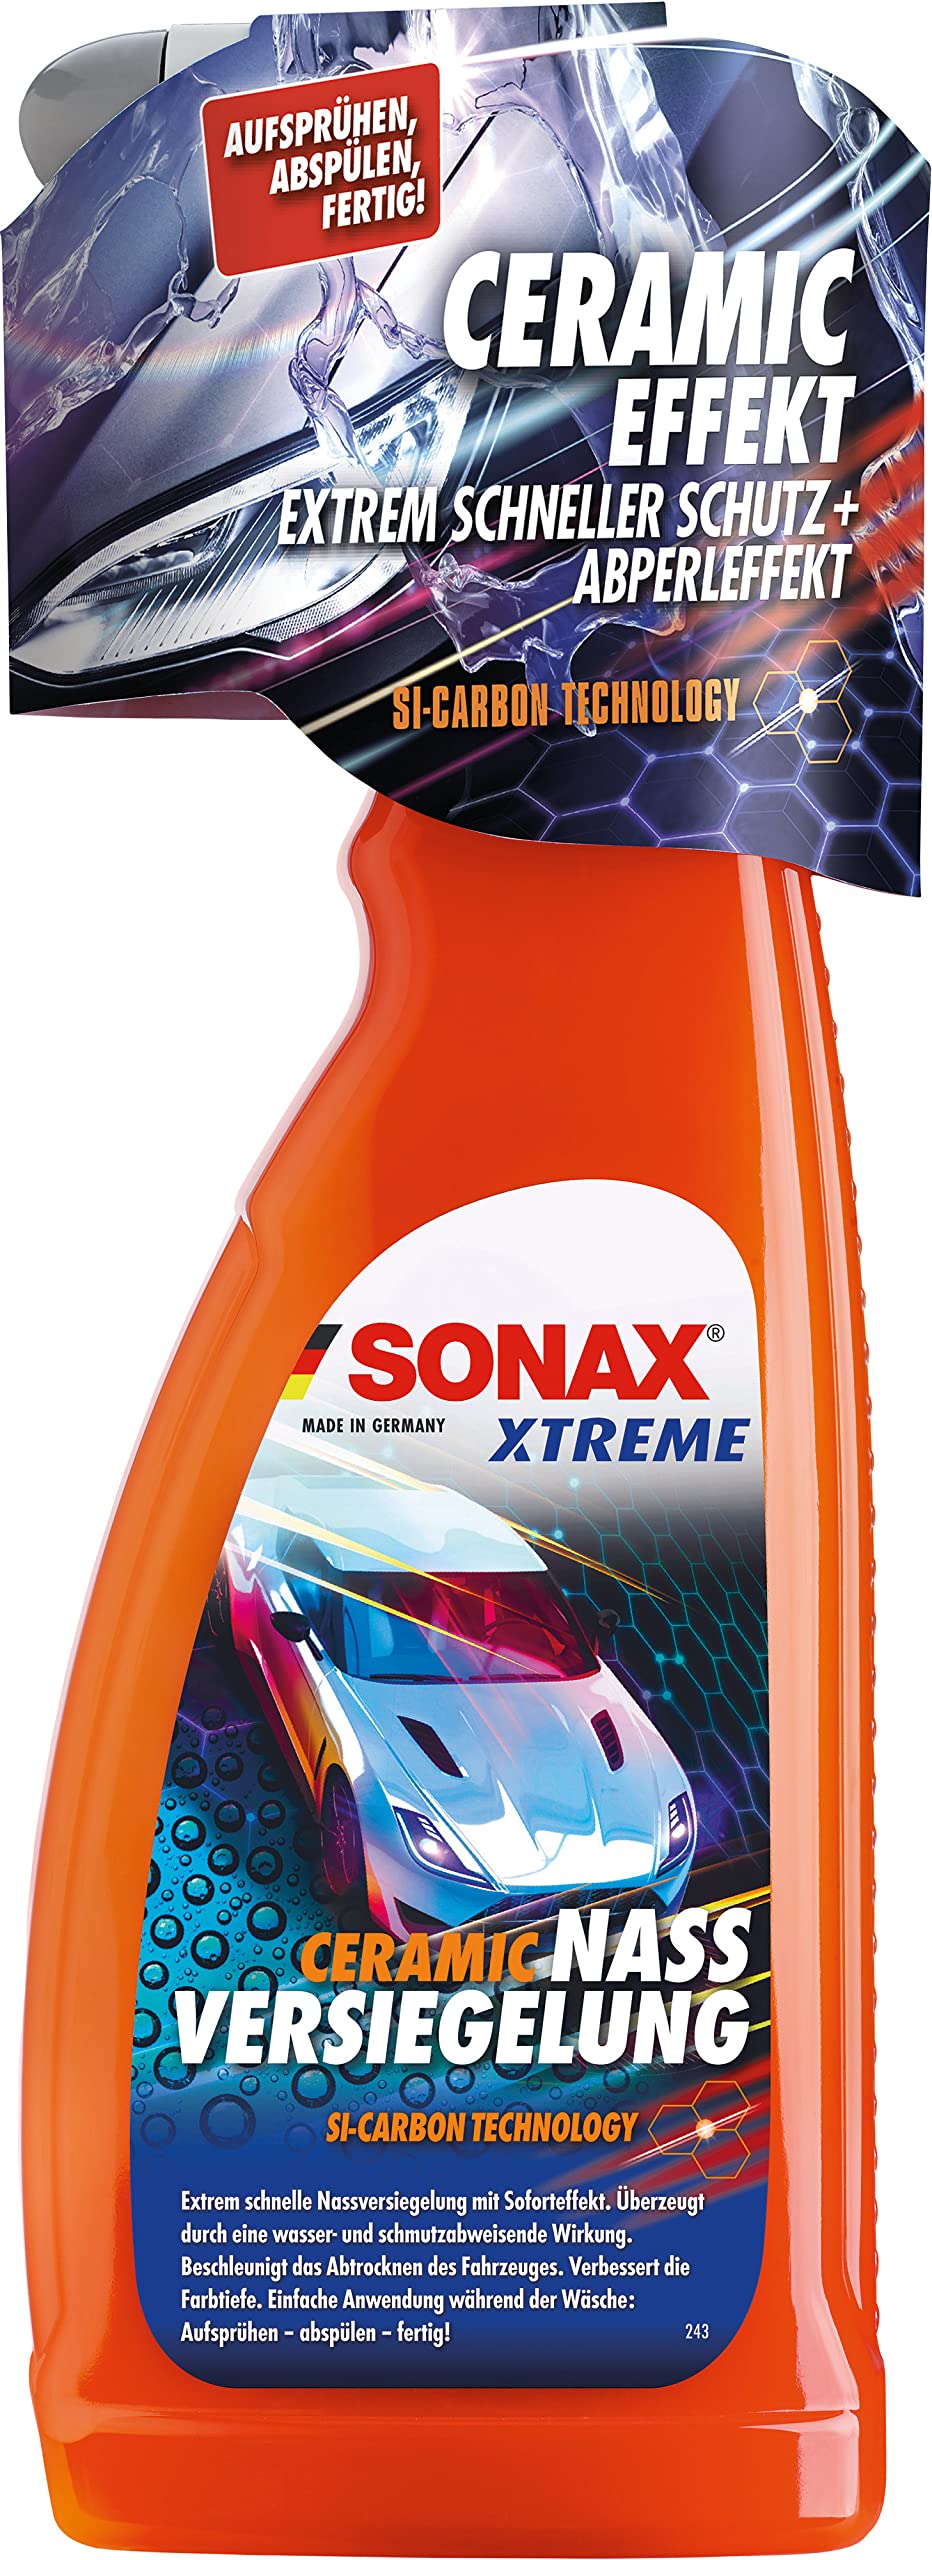 SONAX XTREME Ceramic NassVersiegelung (750 ml) zur schnellen Versiegelung von Lack, Chrom und Kunststoffoberflächen | Art-Nr. 02404000 von SONAX